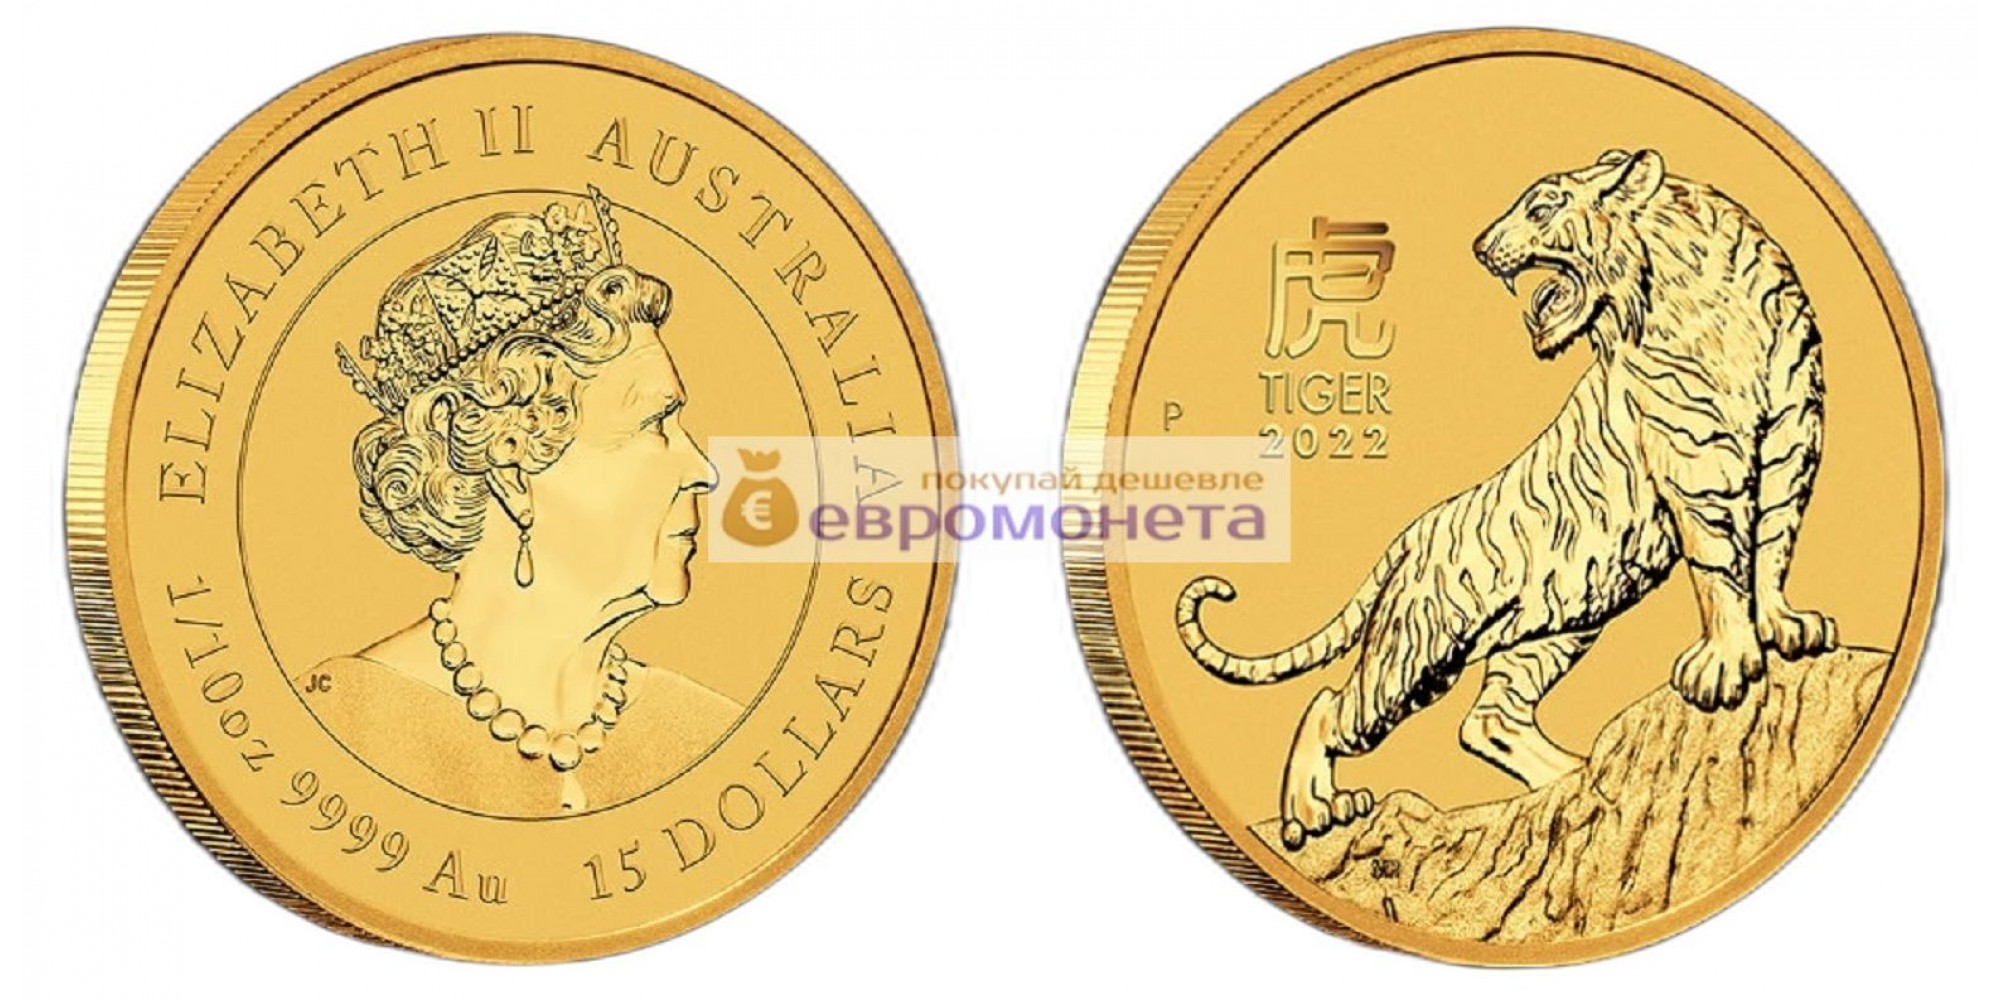 Австралия 15 долларов 2022 "Китайский гороскоп - Год тигра". Золото 9999 1/10 унции. Proof